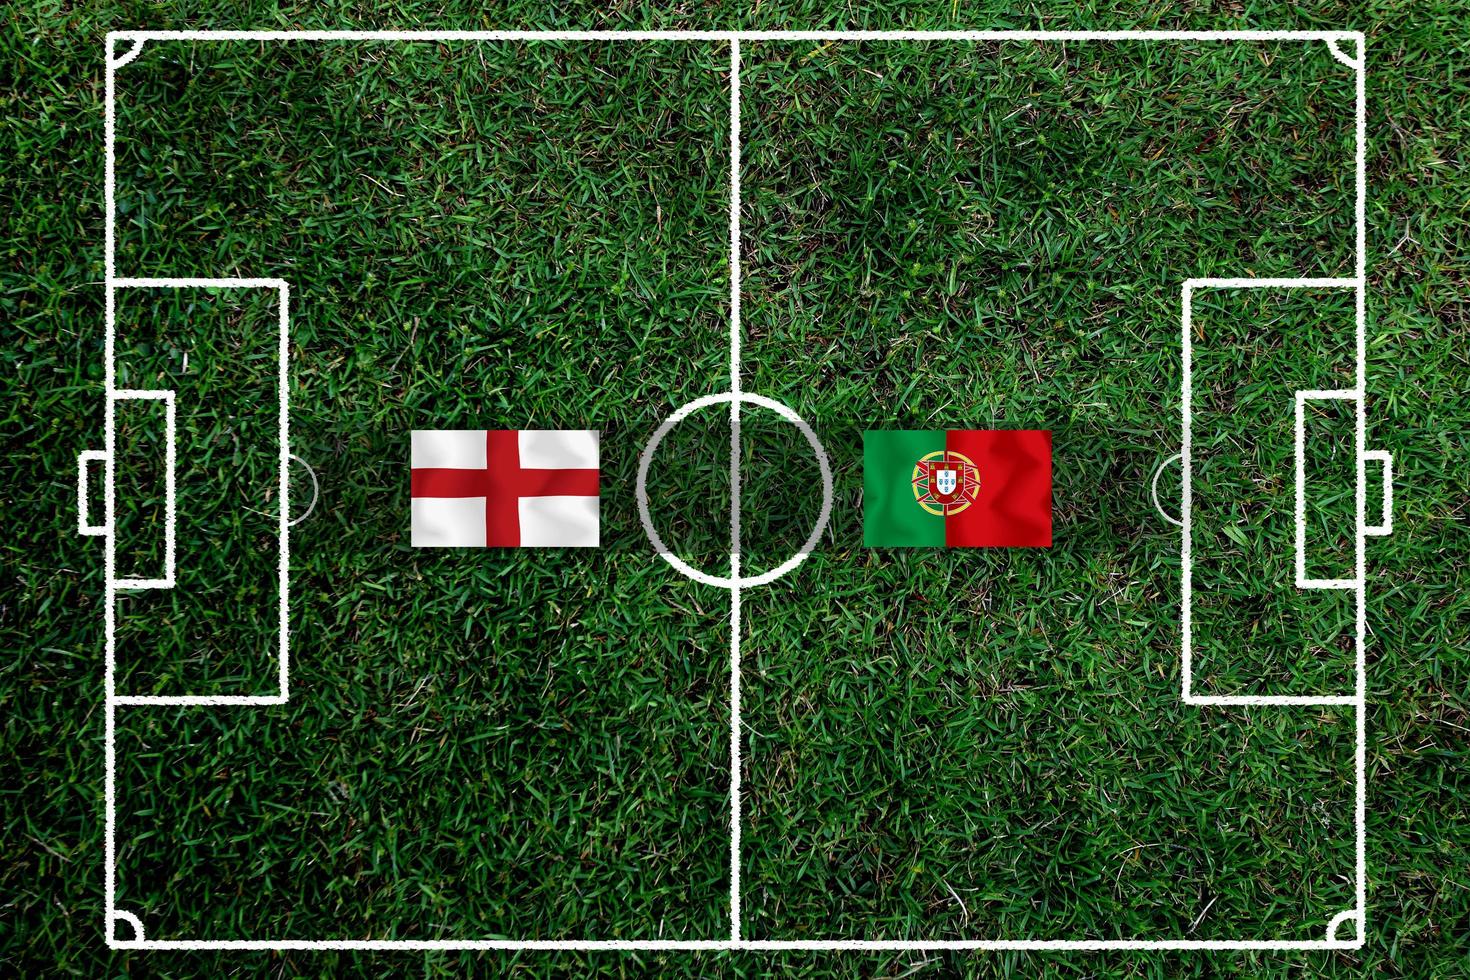 compétition de coupe de football entre le national anglais et le national portugais. photo